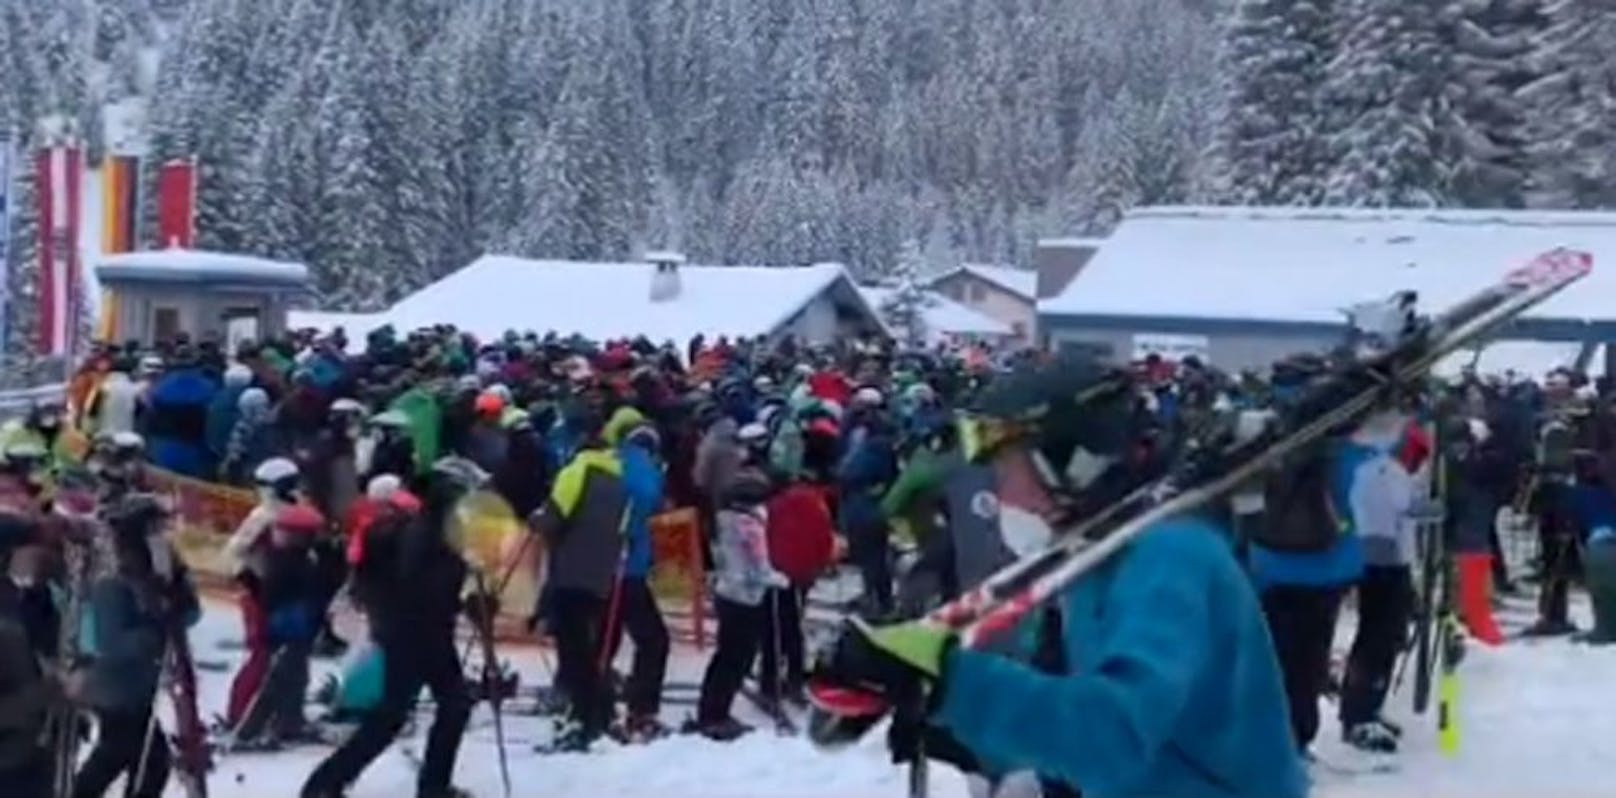 Skifahren ist den Österreichern offenbar sehr wichtig.